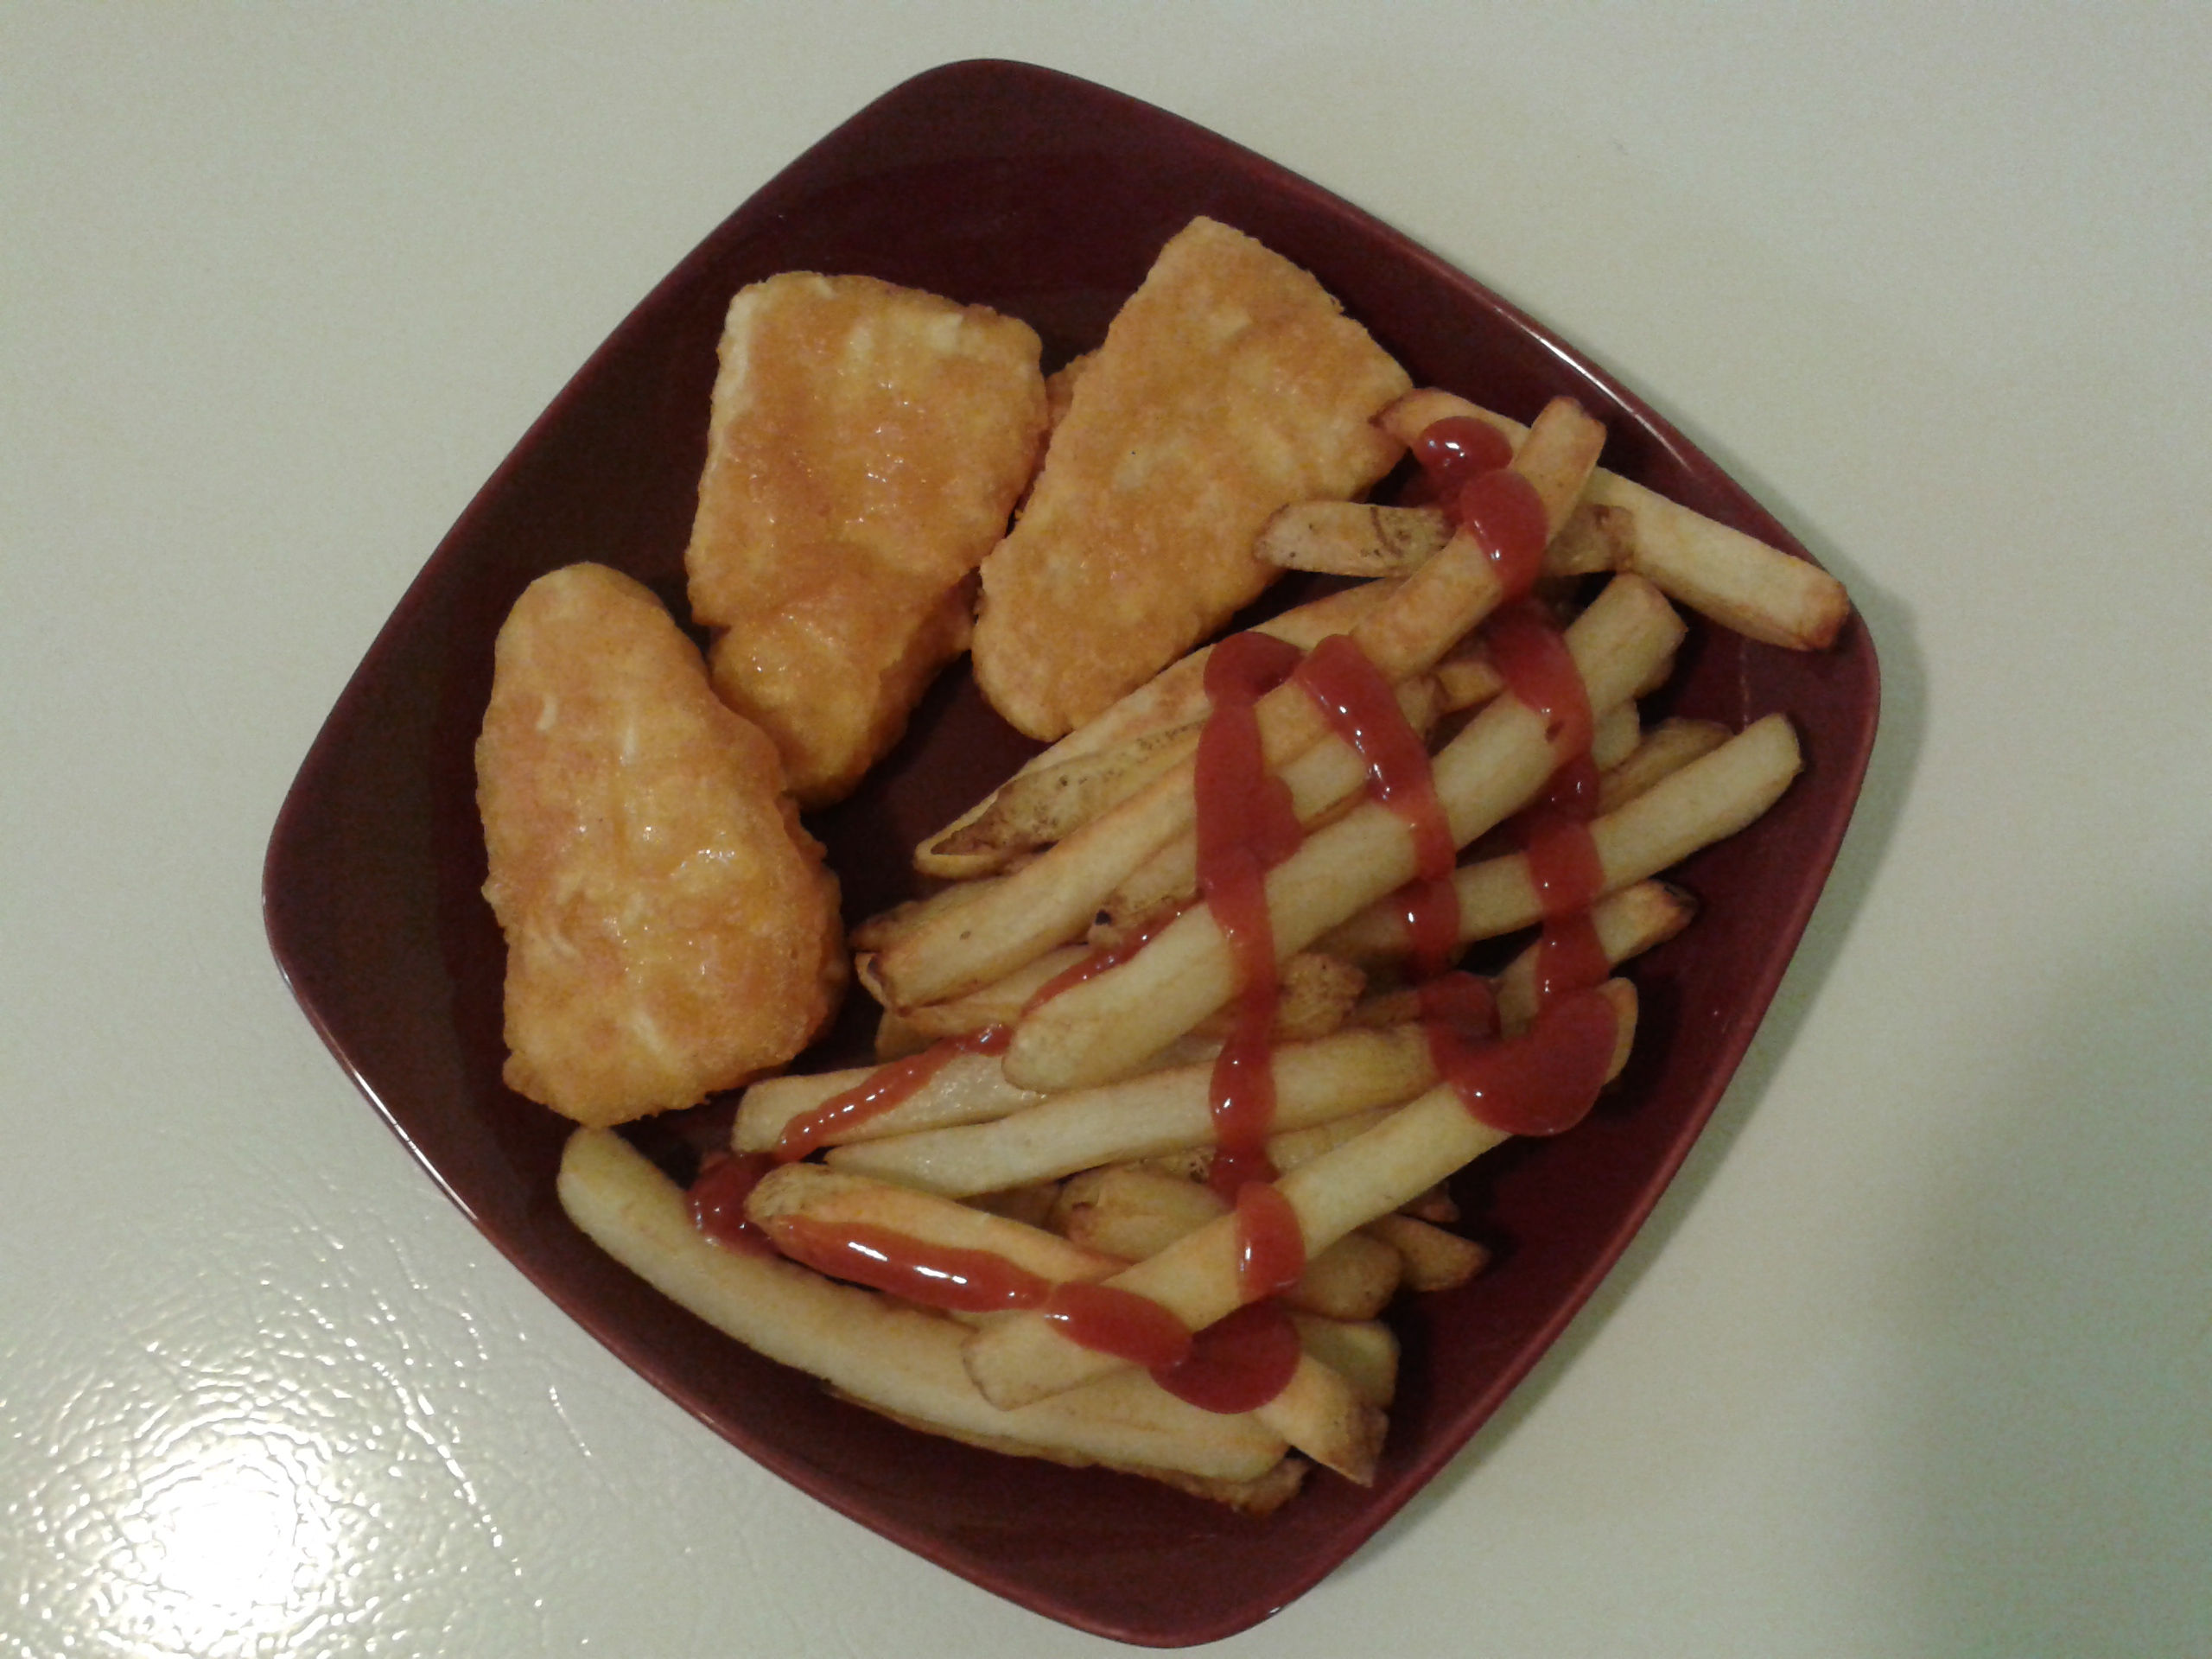 J'en ai profité pour me faire un "fish n' chips". ;)